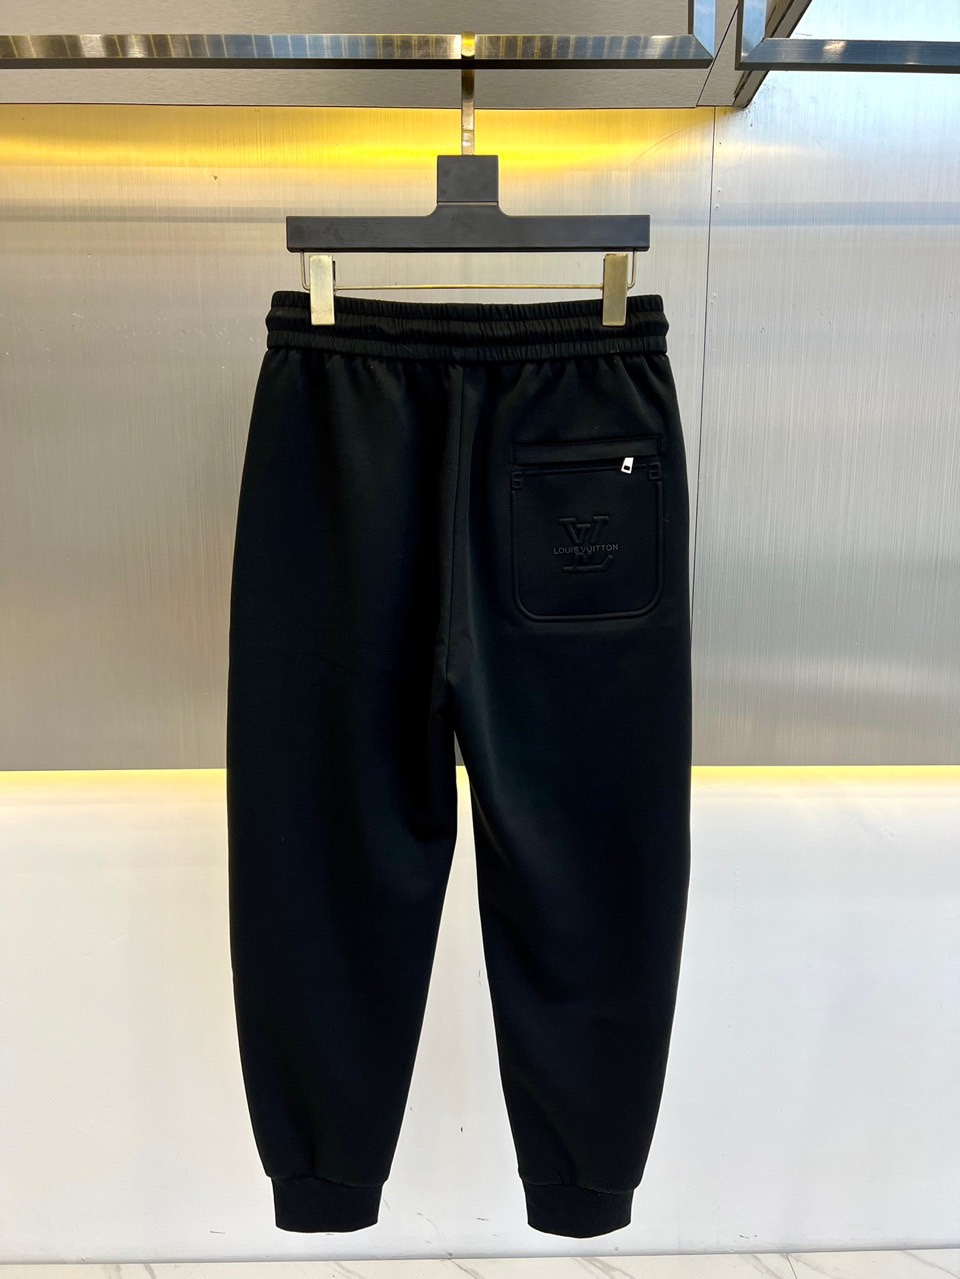 v24s新品男士休闲卫裤一款松紧腰休闲卫裤兼备的百搭裤装也是男士衣橱里不可缺少的搭配神器属于实穿型的经典